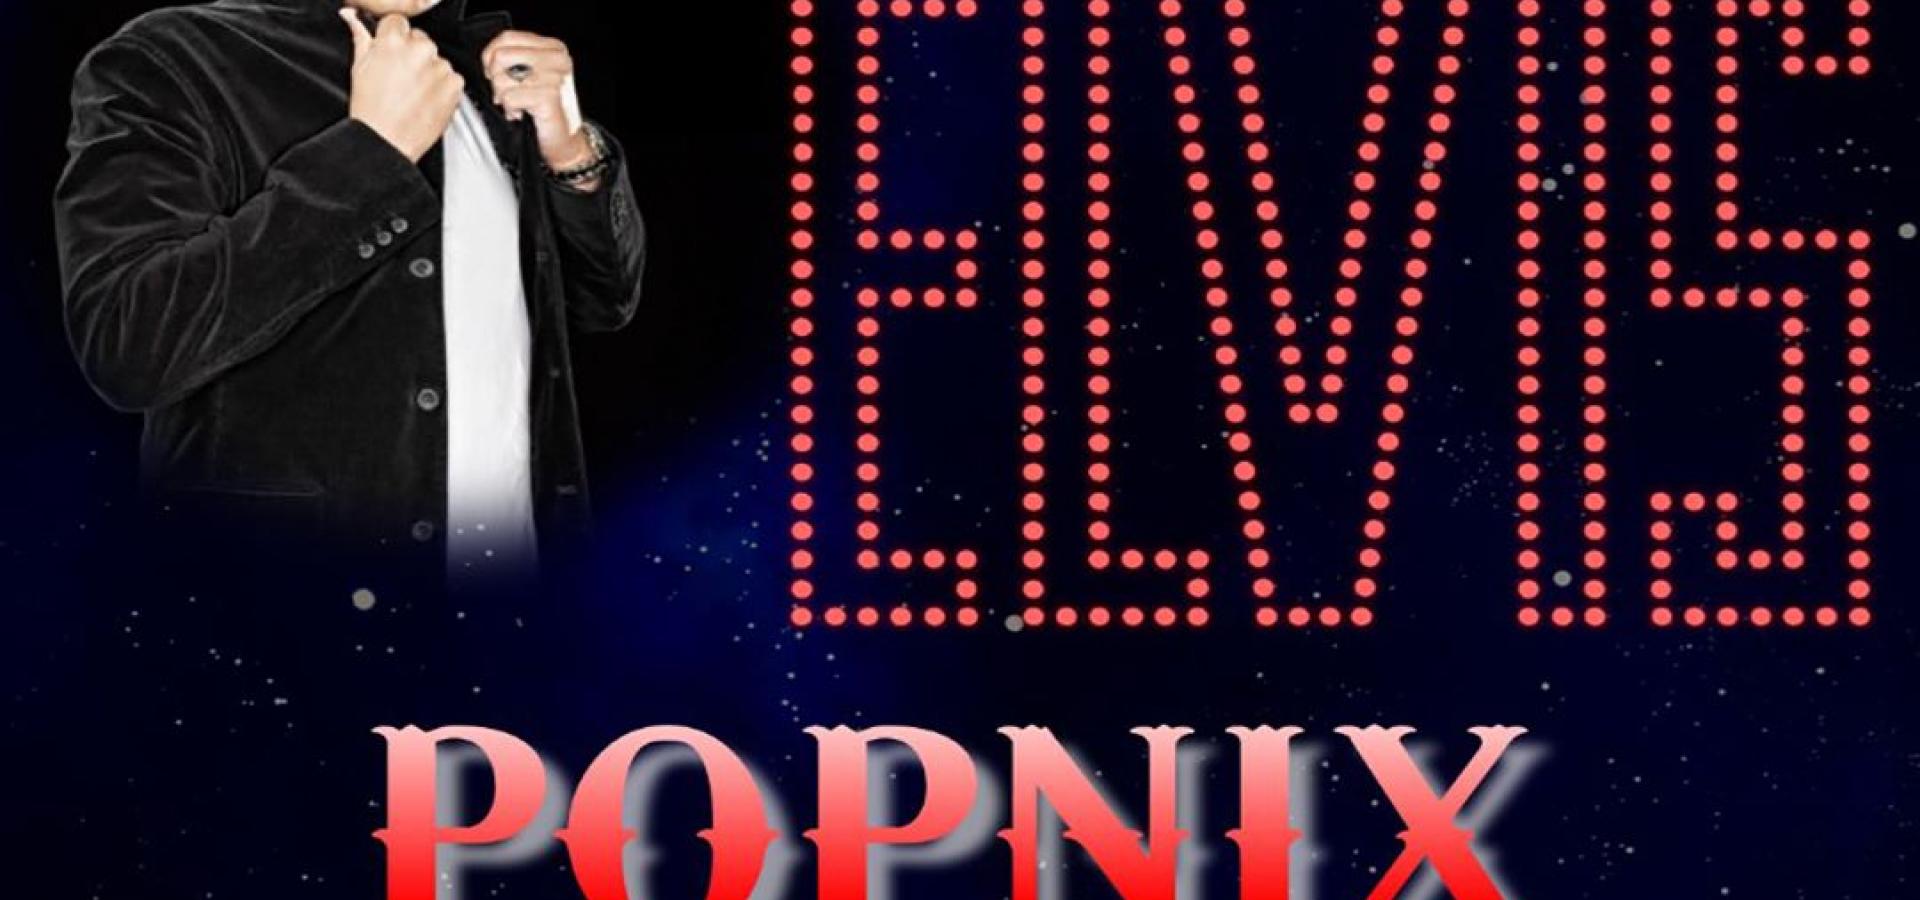 An Evening With Elvis - Popnix och Henrik Åberg